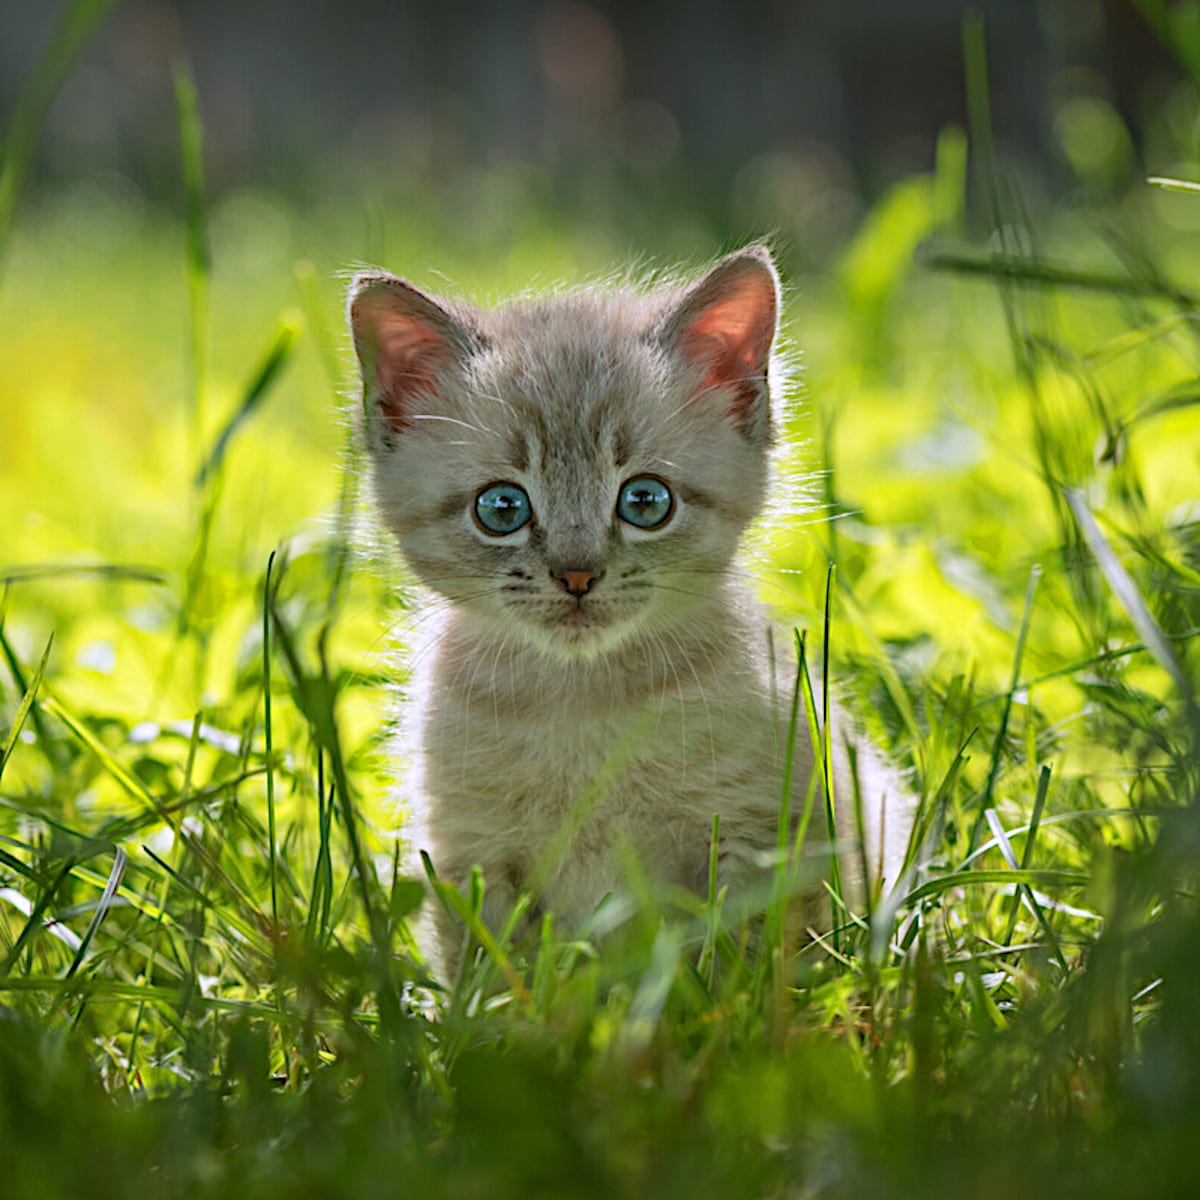 Kitten in a grassy meadow